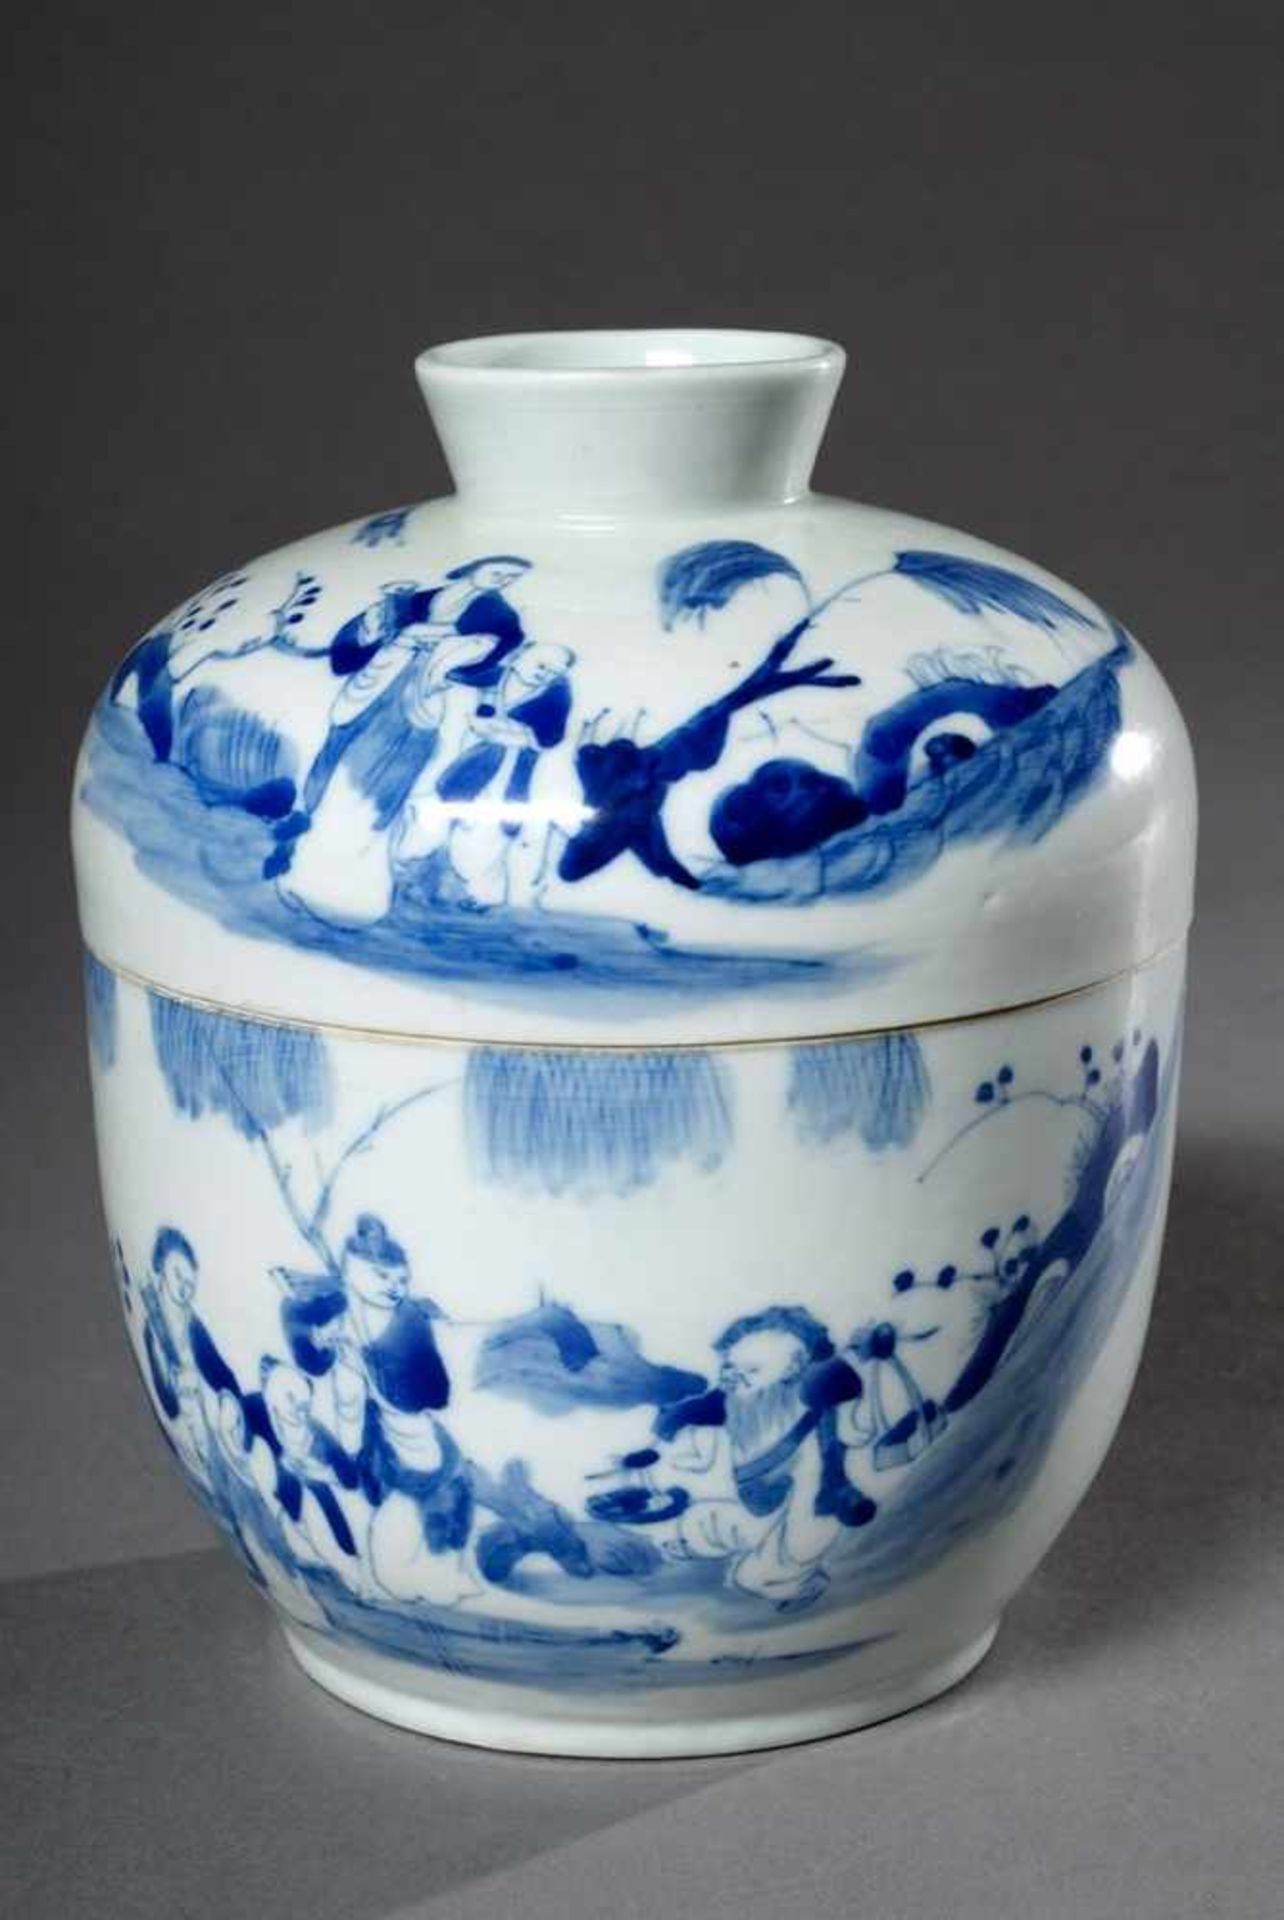 Porzellan Deckelgefäß mit Blaumalerei „Gartenszenen“, China 19.Jh., H. 16cm, Ø 13,5cm Porcelain